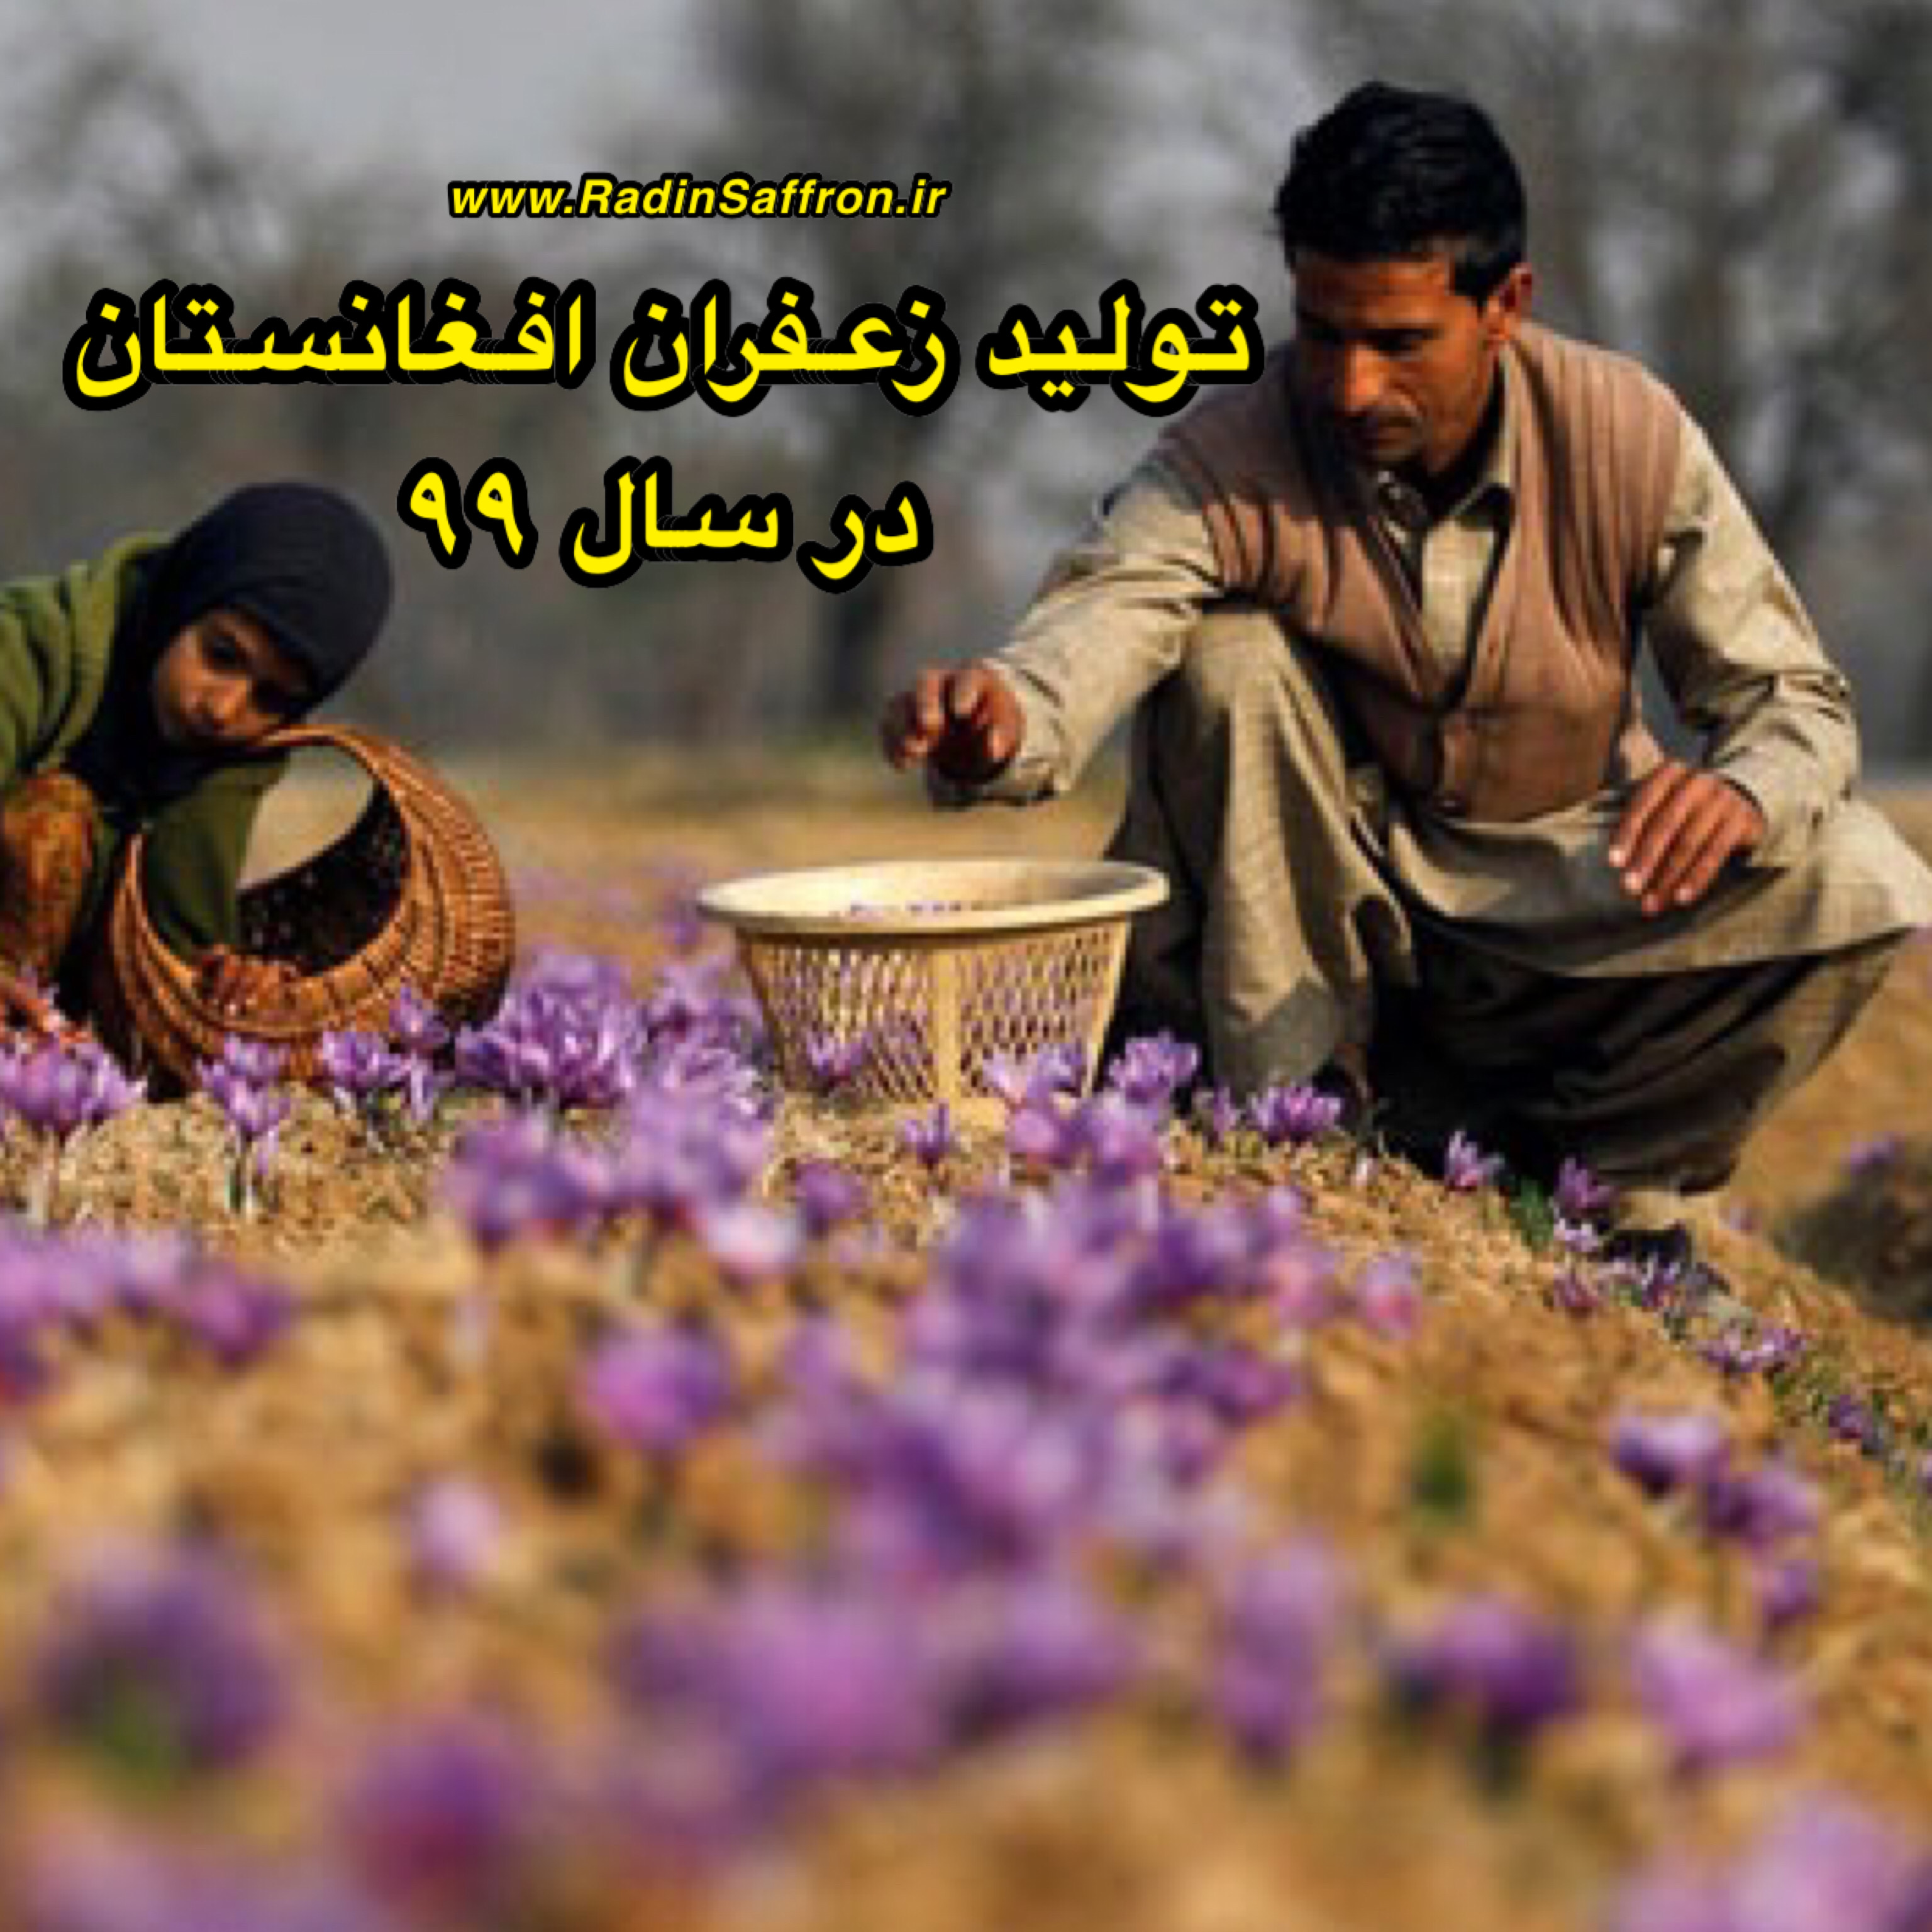 پیش بینی تولید ۲۴ تن زعفران در کشور افغانستان در سال ۱۳۹۹